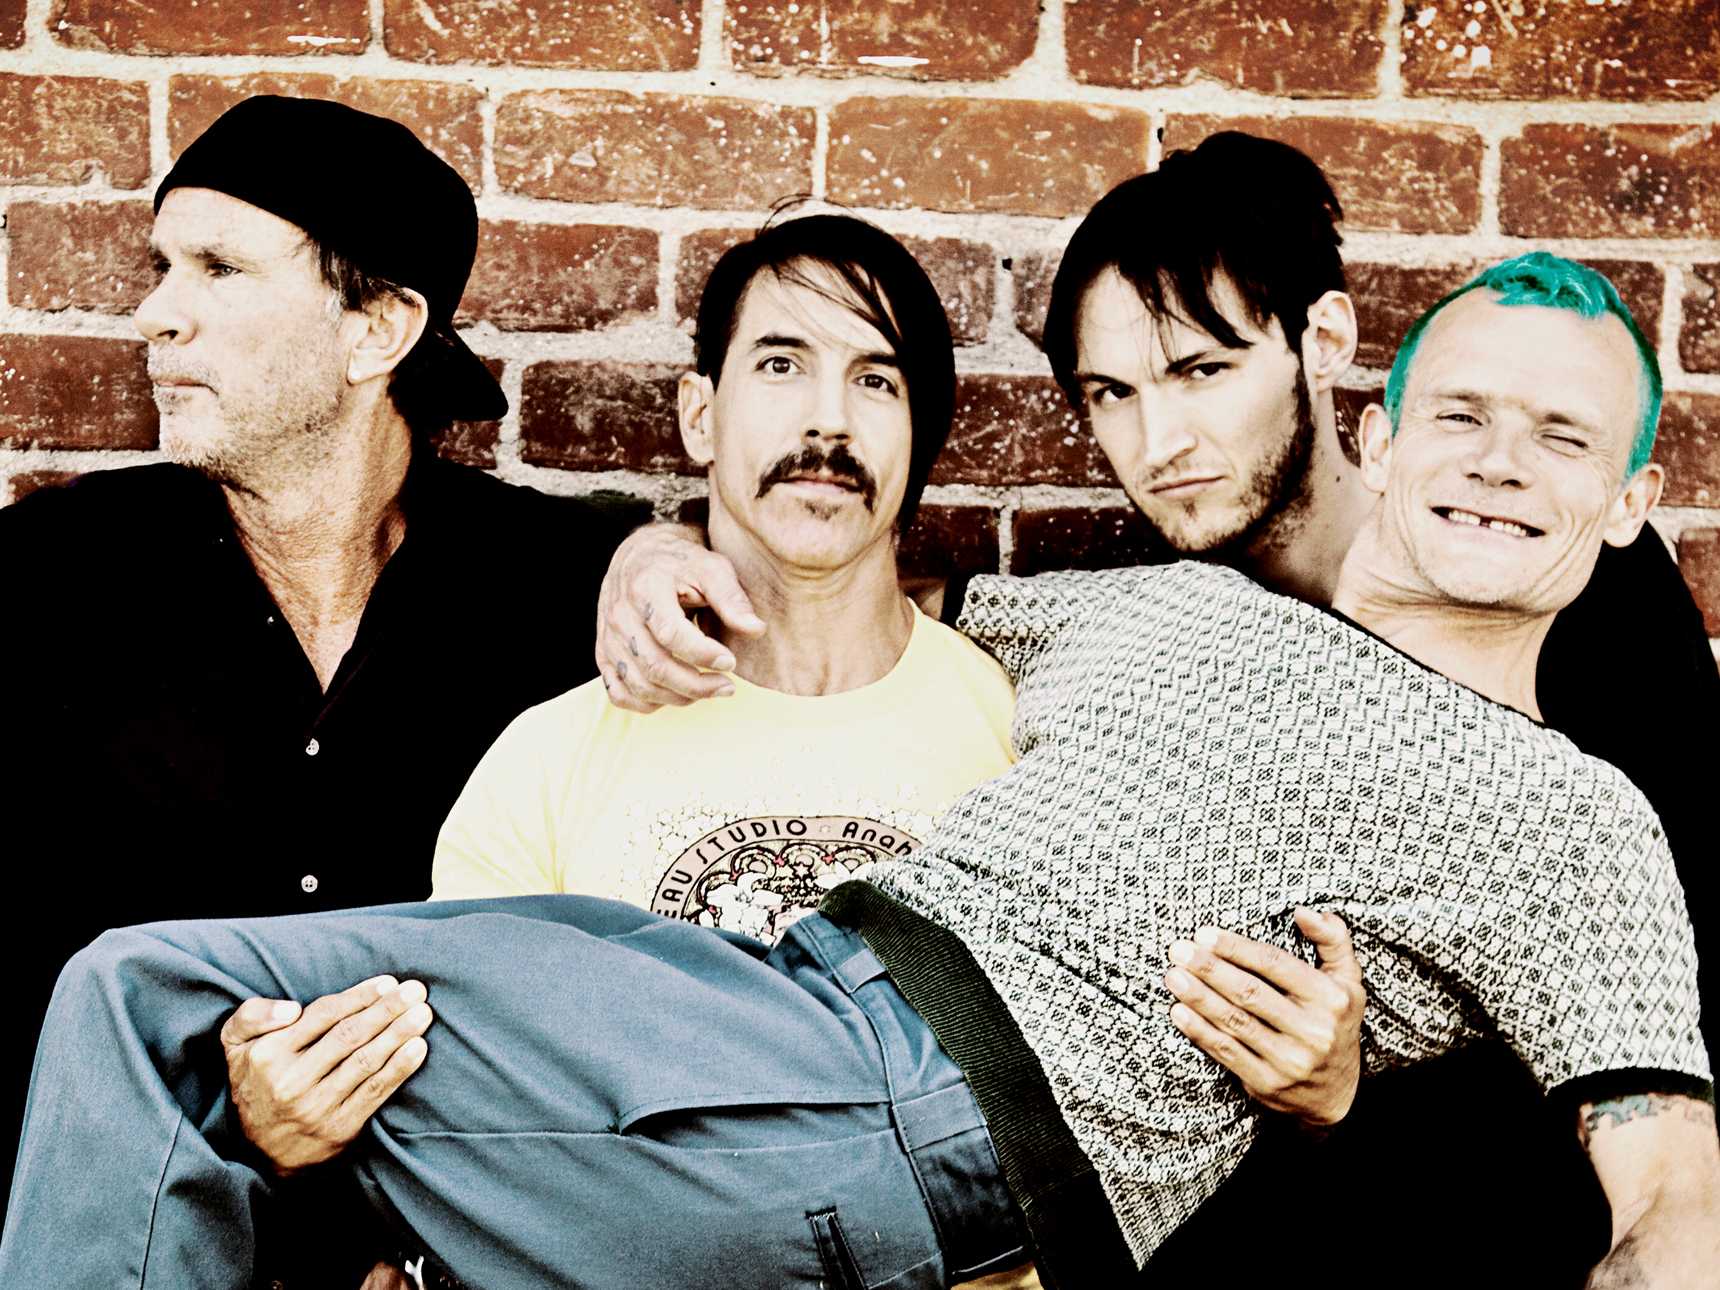 Вся мощь Red Hot Chili Peppers в одной подборке  вспоминаем главные хиты группы Red Hot Chili Peppers  Лучшие песни, хиты, клипы слушать онлайн бесплатно